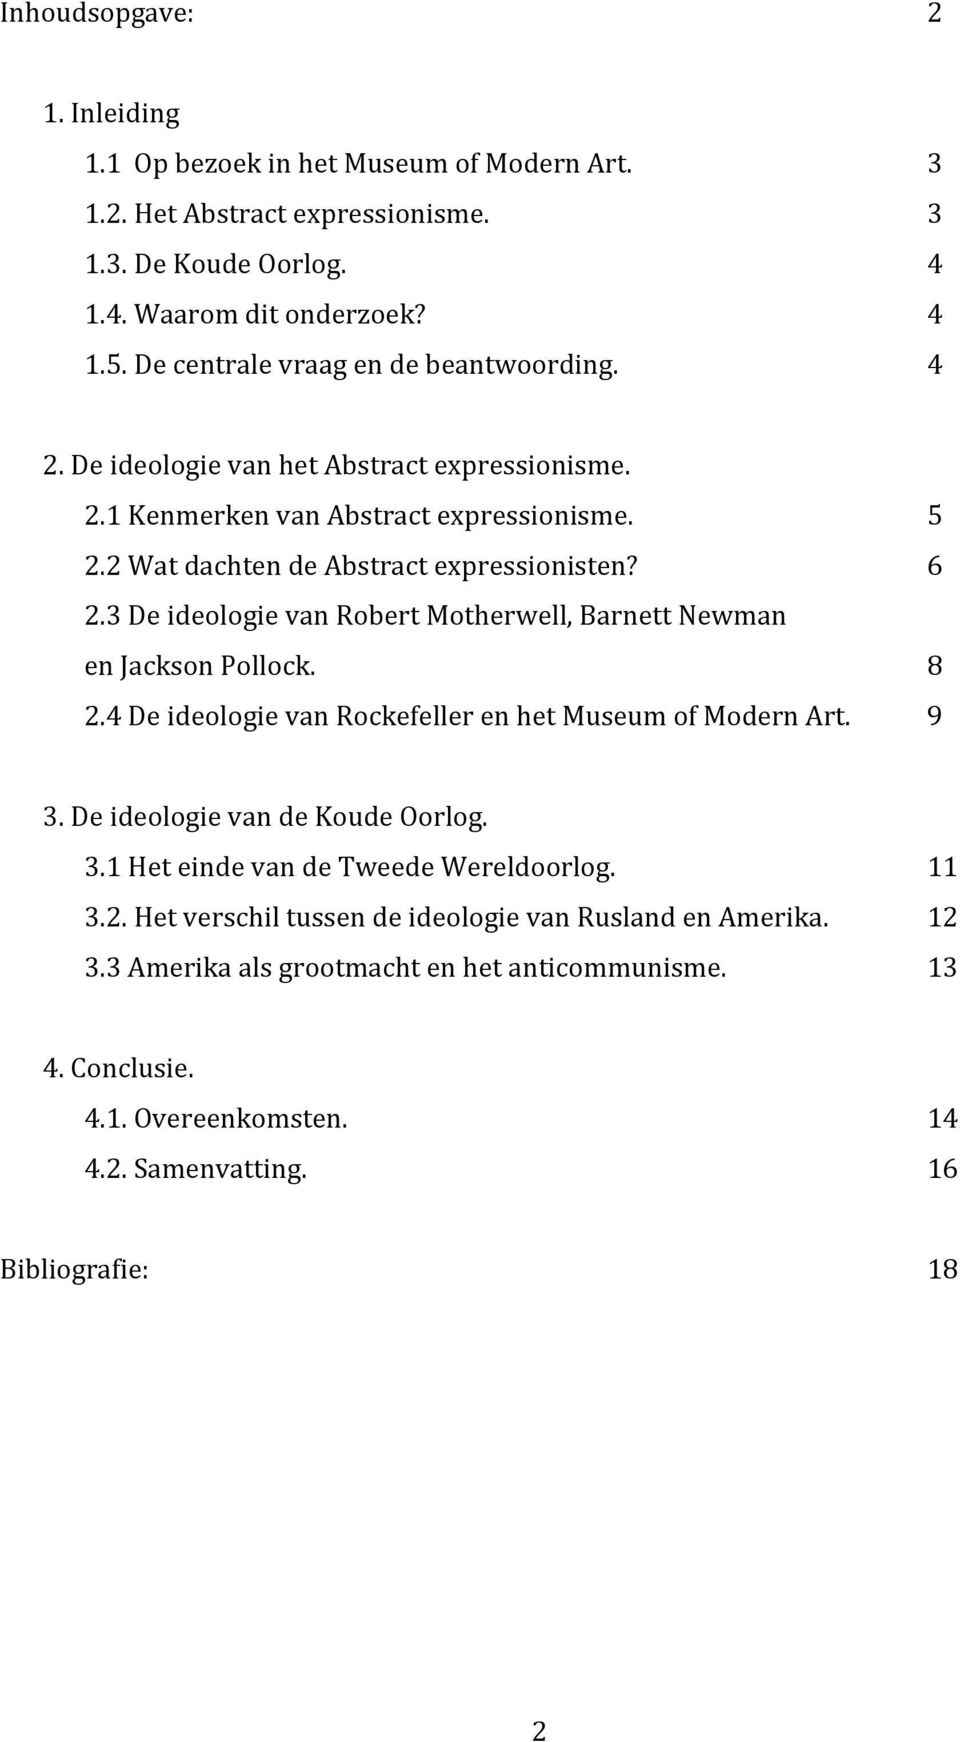 3 De ideologie van Robert Motherwell, Barnett Newman en Jackson Pollock. 8 2.4 De ideologie van Rockefeller en het Museum of Modern Art. 9 3. De ideologie van de Koude Oorlog. 3.1 Het einde van de Tweede Wereldoorlog.